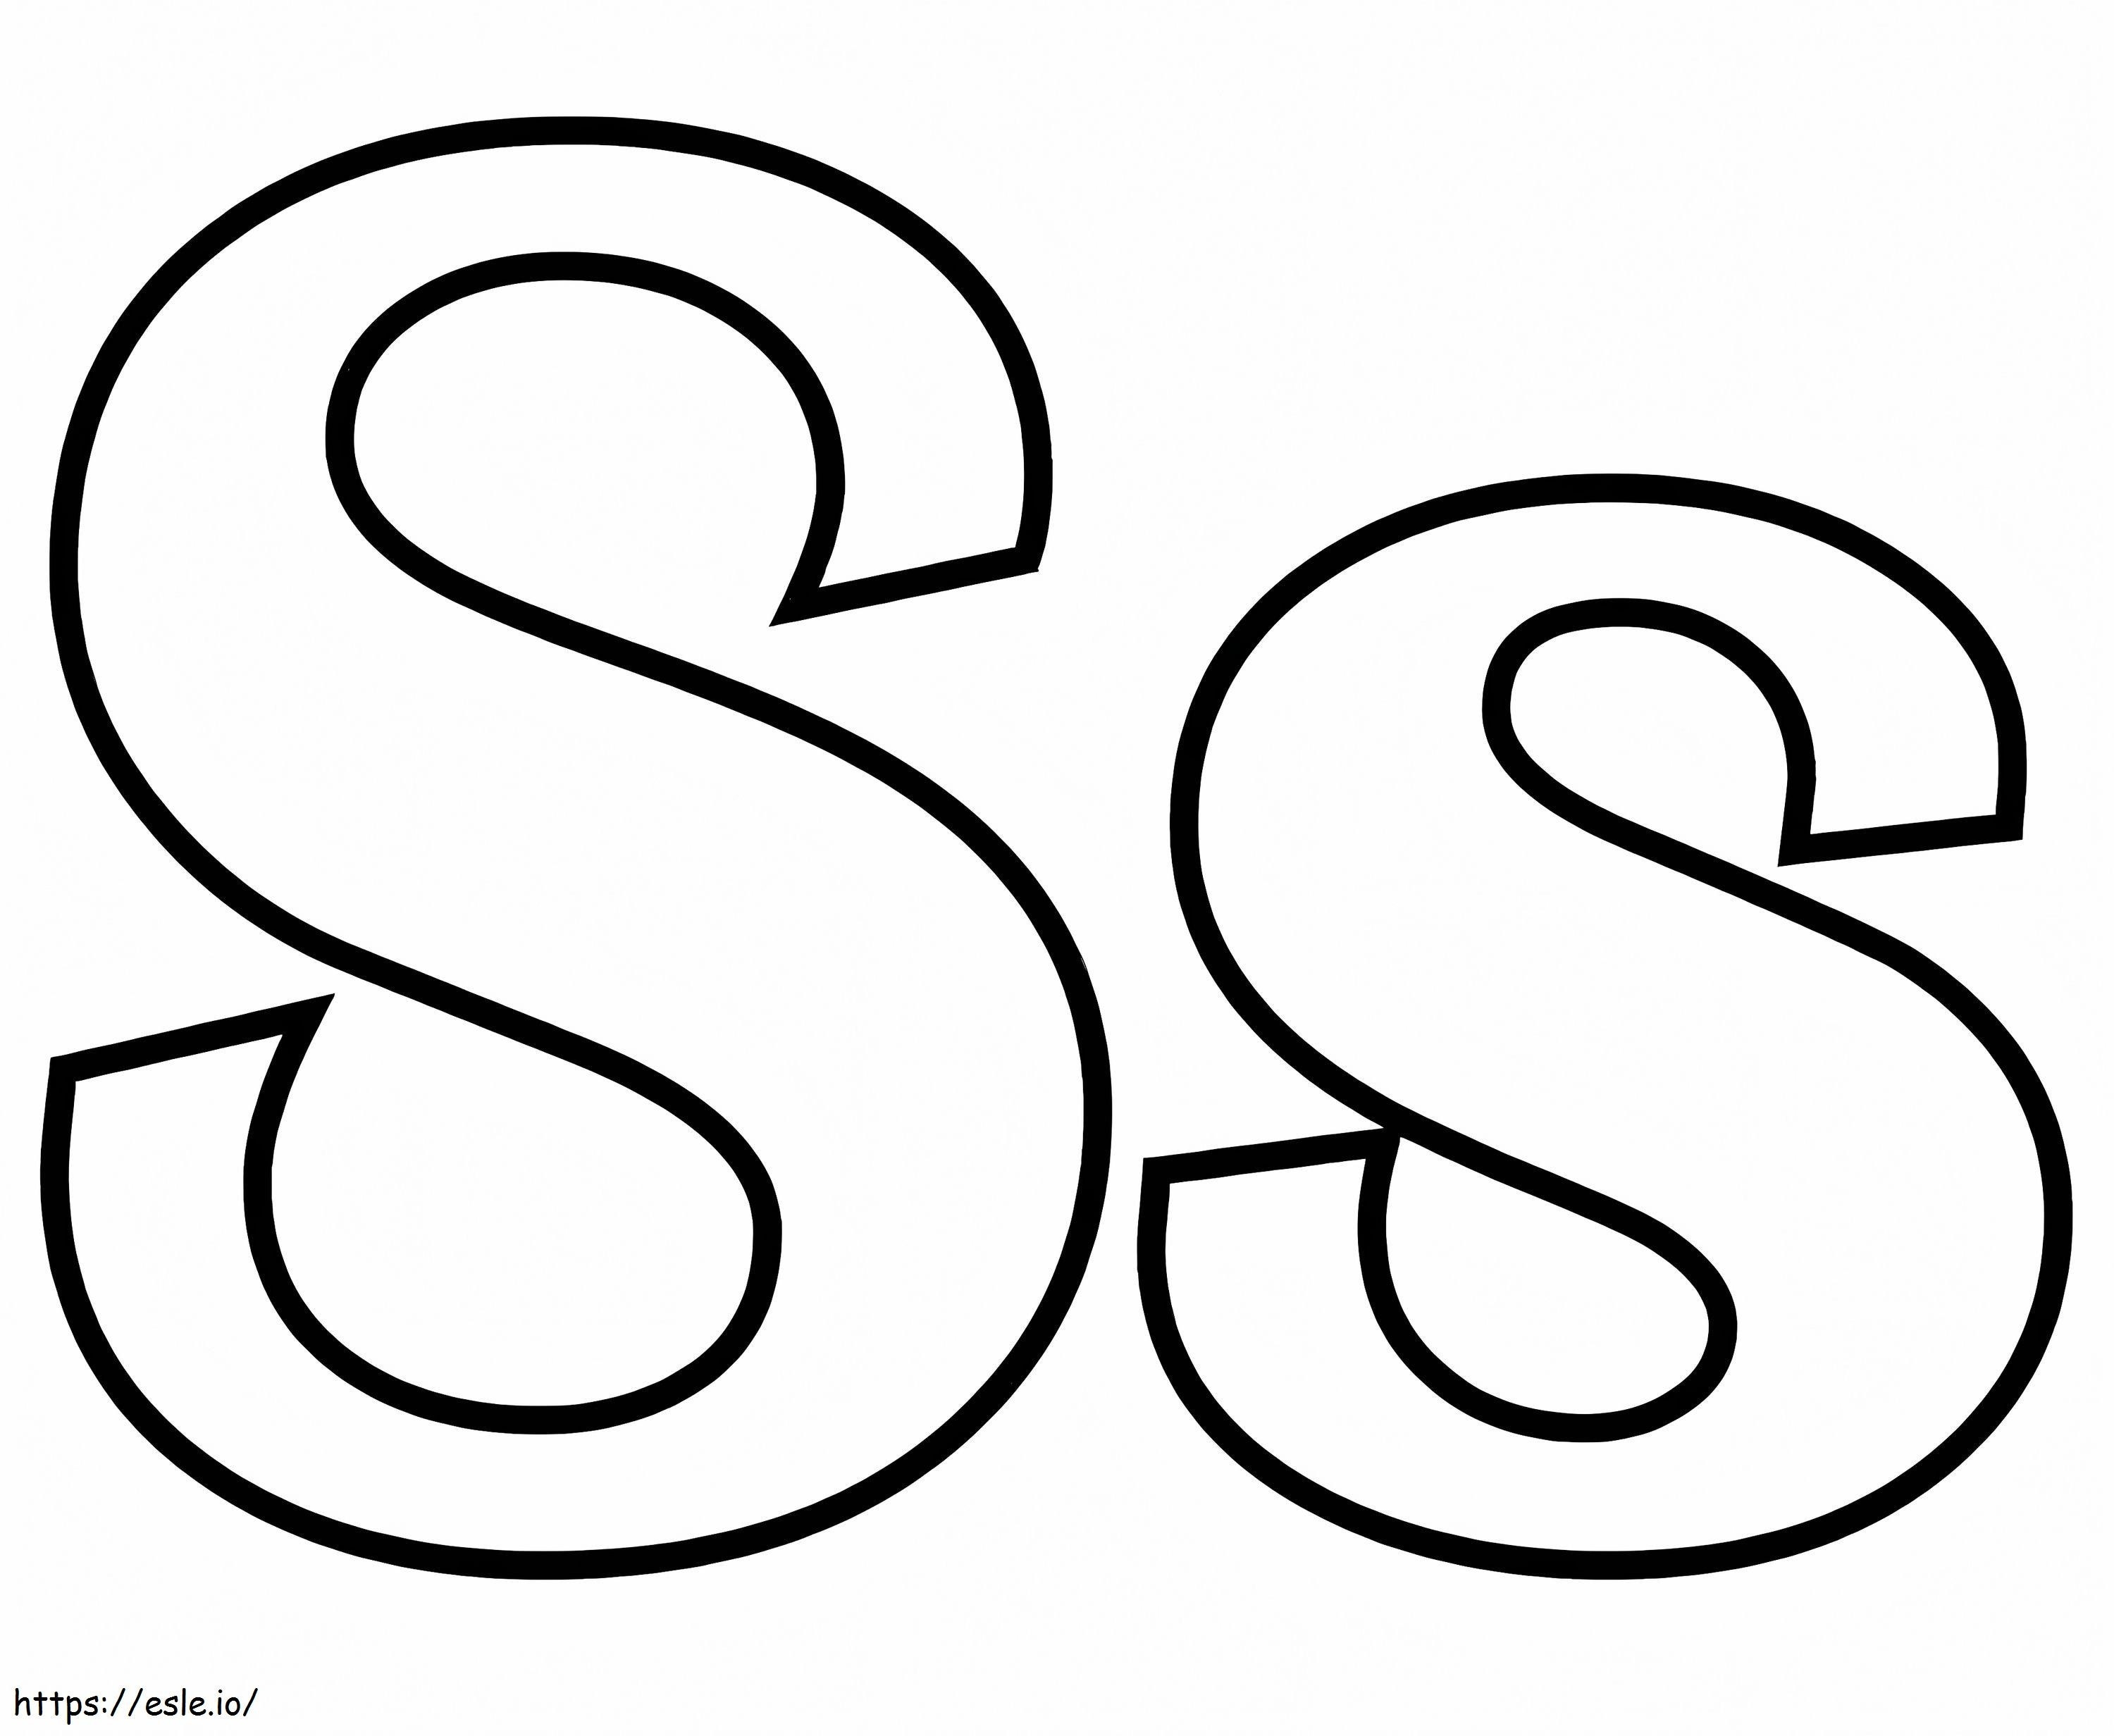 Coloriage Lettre S S à imprimer dessin